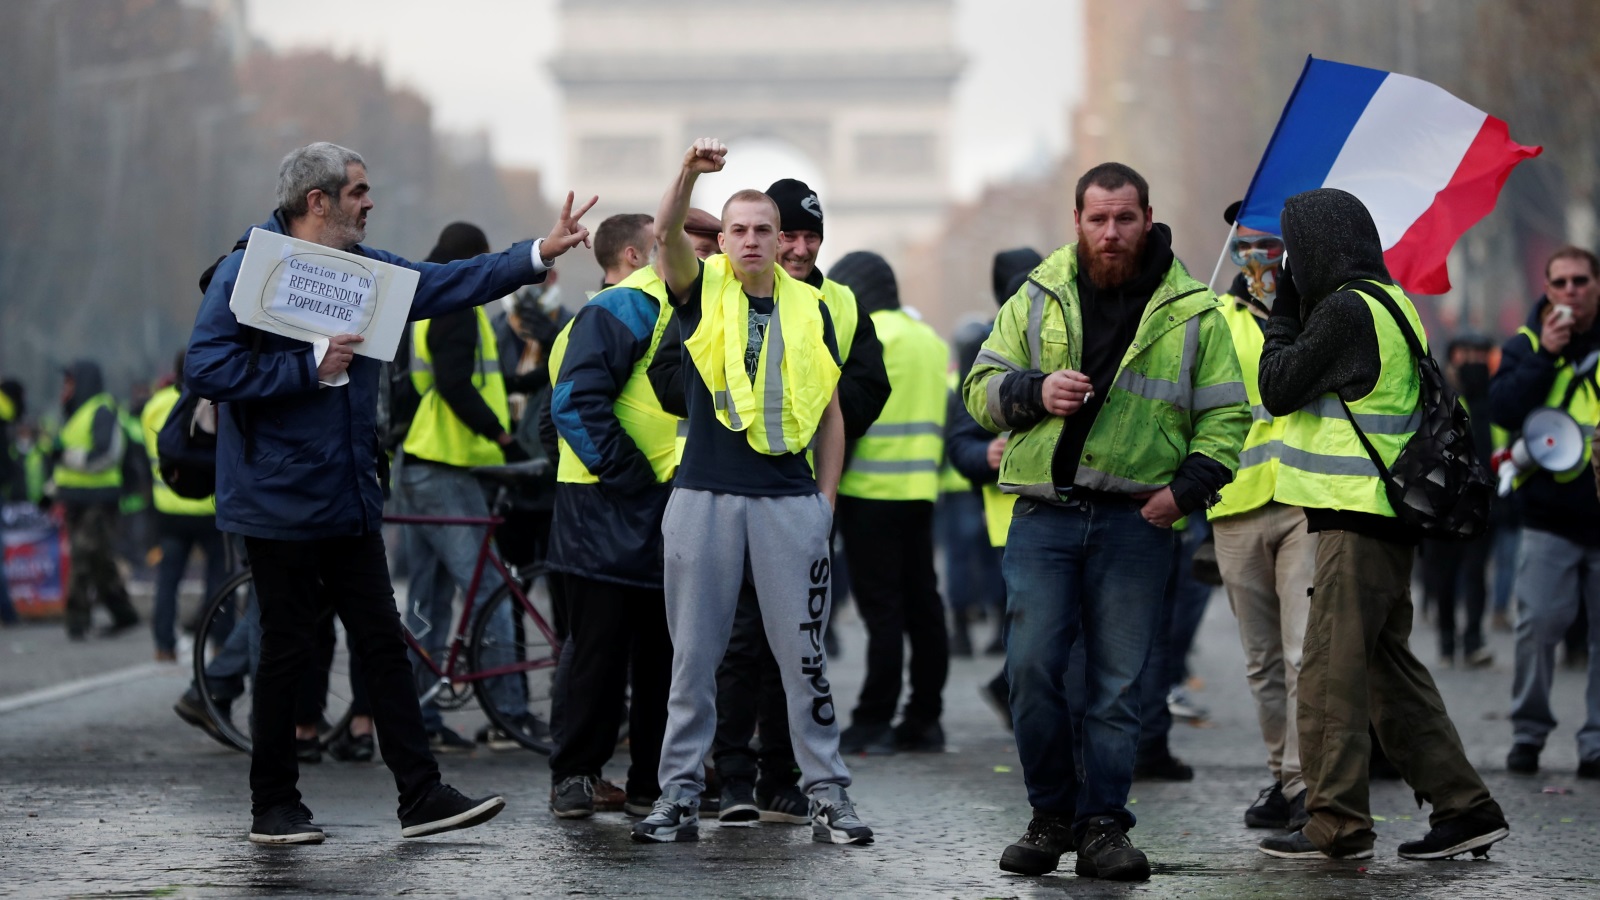 تبقي احتجاجات فرنسا الأخيرة مفتوحة على كل الاحتمالات إلا أنه ليس من المستبعد أن يتم تشكل خلية أزمة وتغير حكومي وتدخل البرلمان كوسيط لحل هذه الأزمة